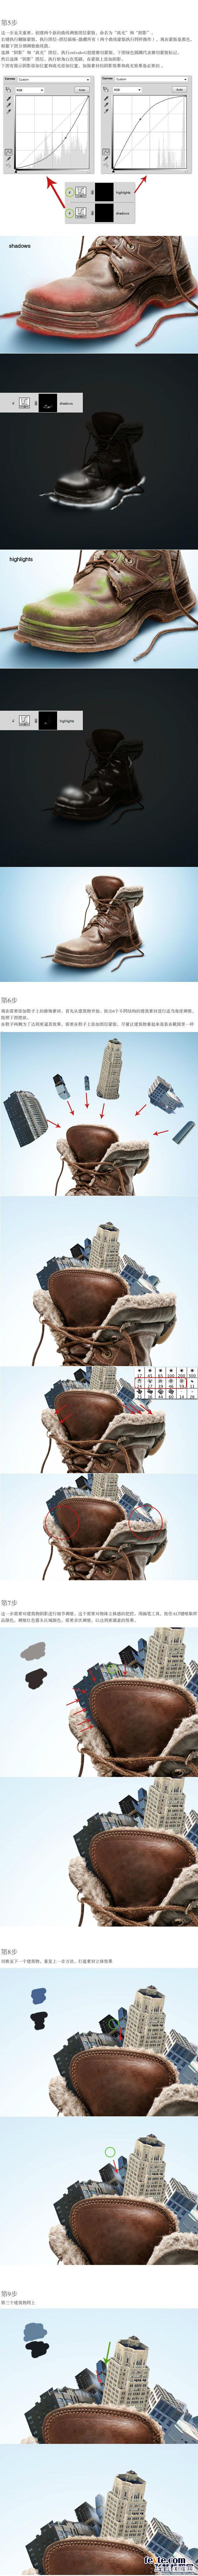 PS合成创意生态军靴广告海报[上]3